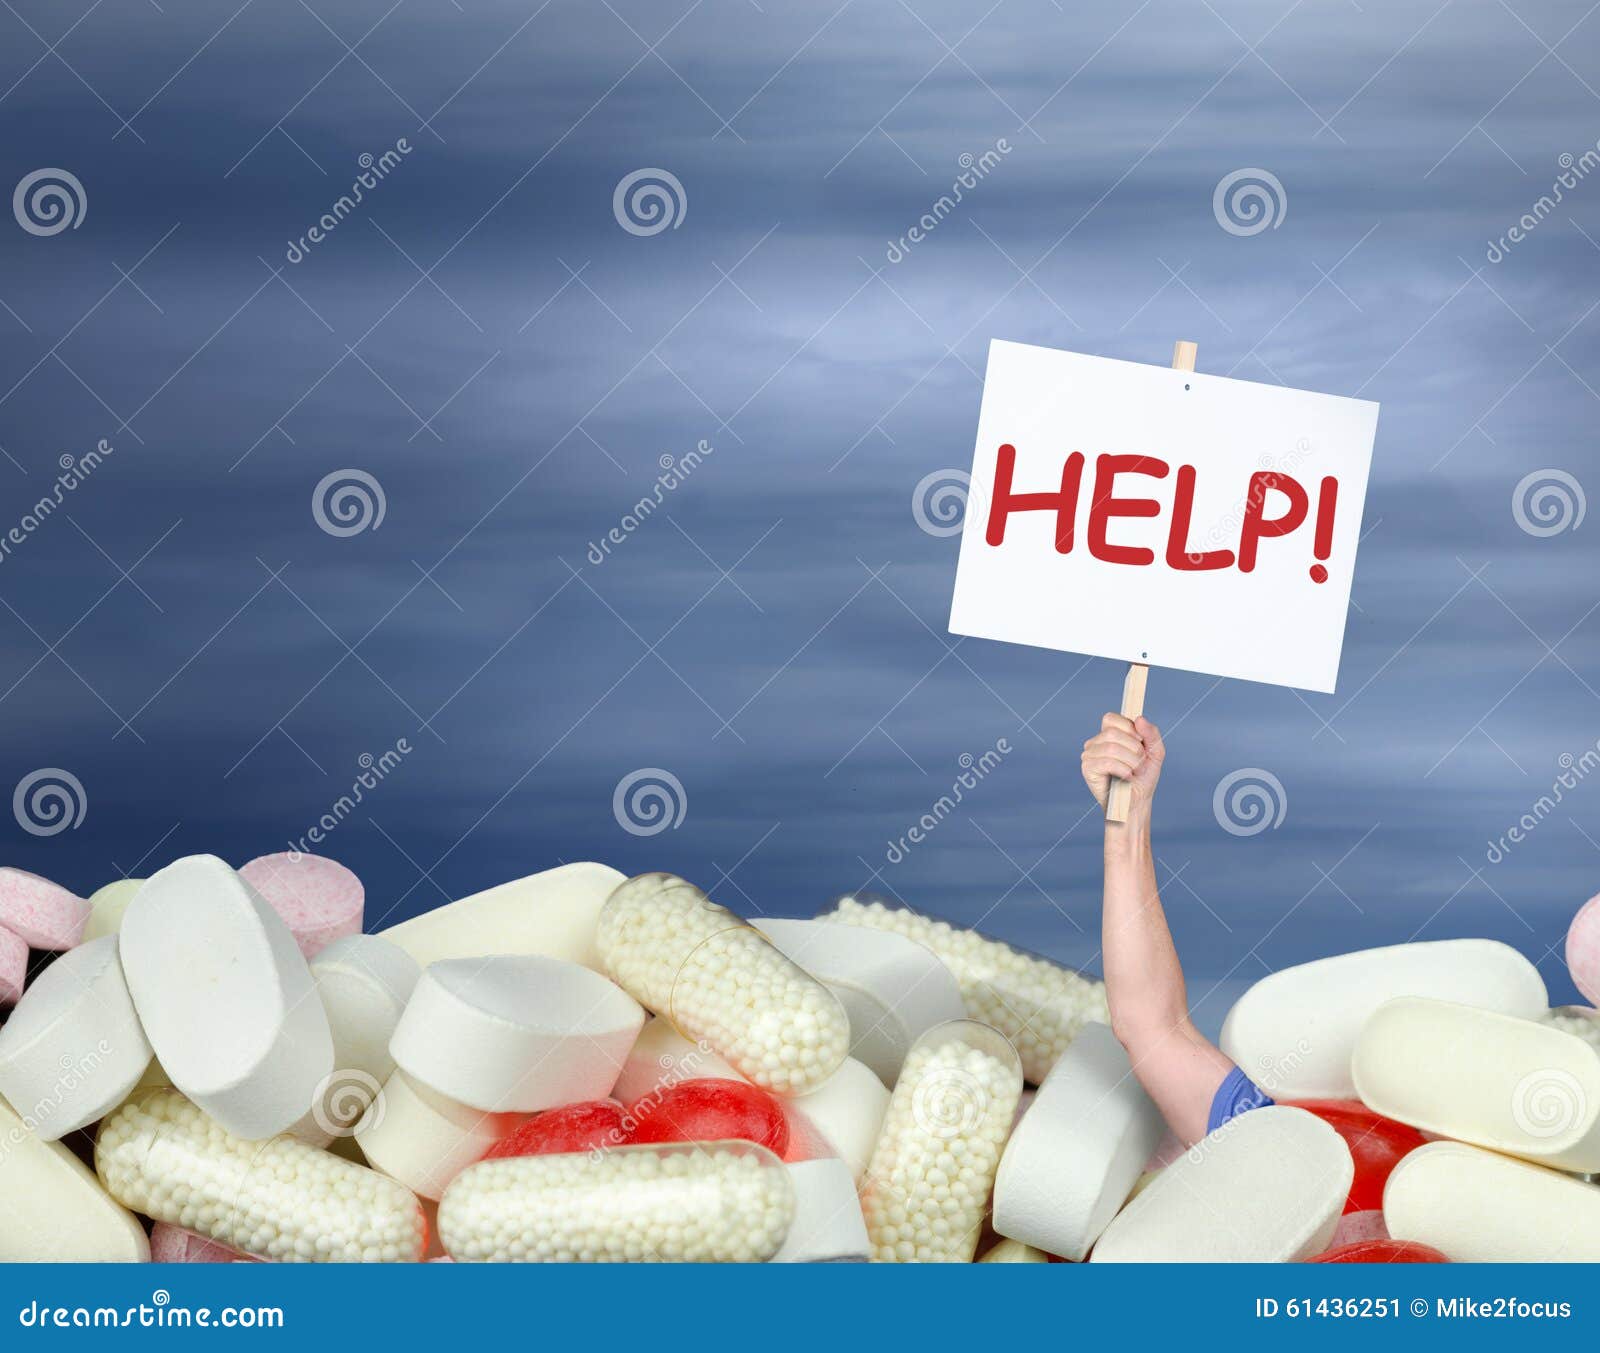 drug abuse addiction chronic pain medication